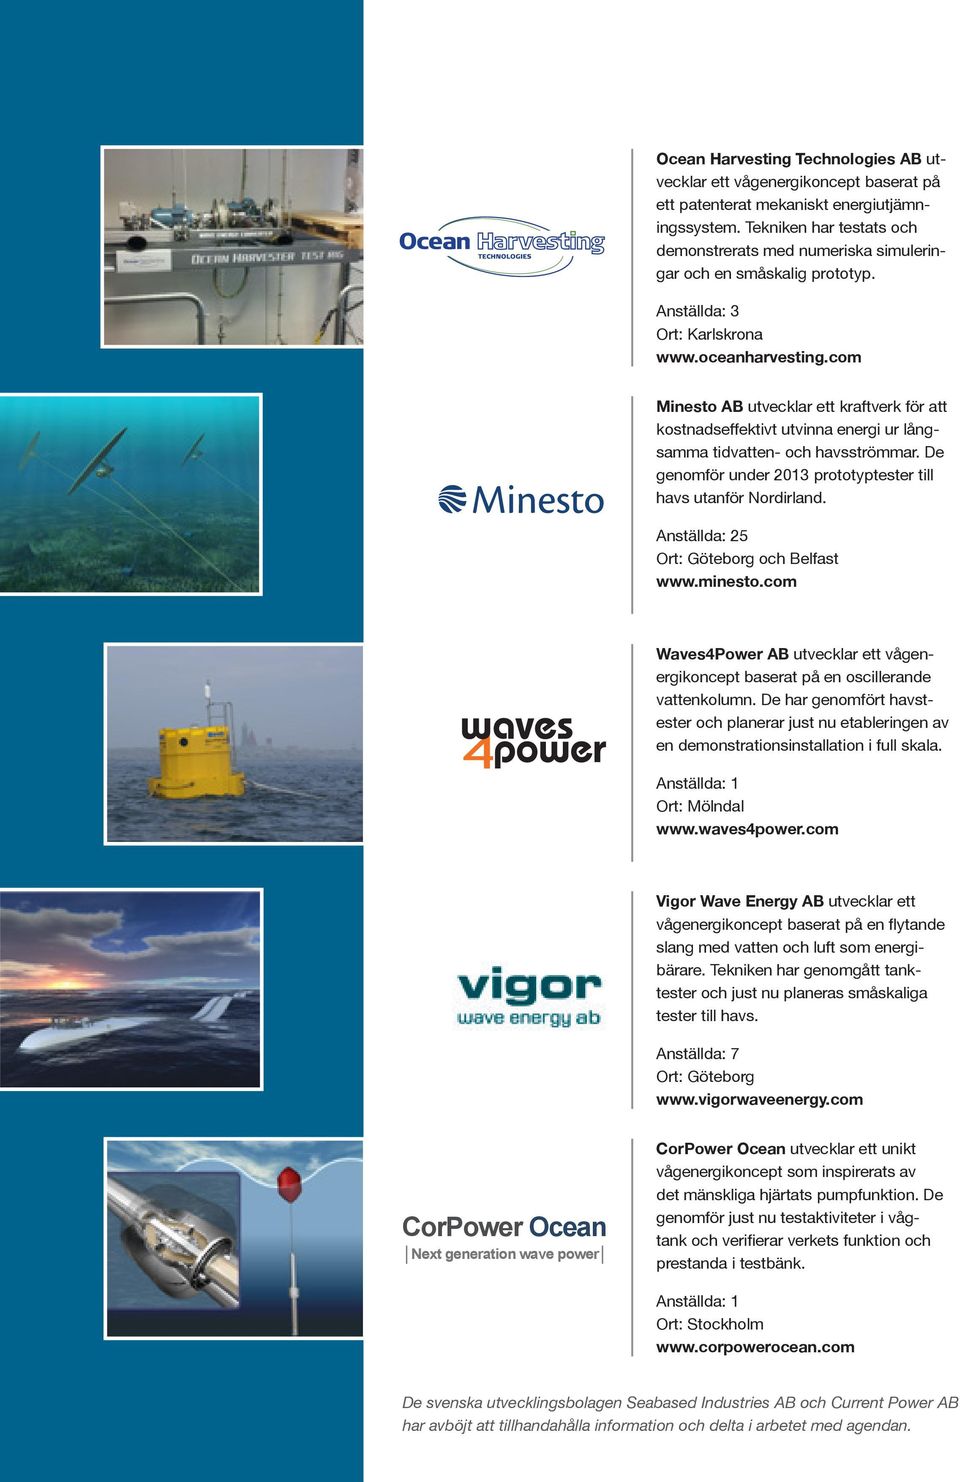 com Minesto AB utvecklar ett kraftverk för att kostnadseffektivt utvinna energi ur långsamma tidvatten- och havsströmmar. De genomför under 2013 prototyptester till havs utanför Nordirland.